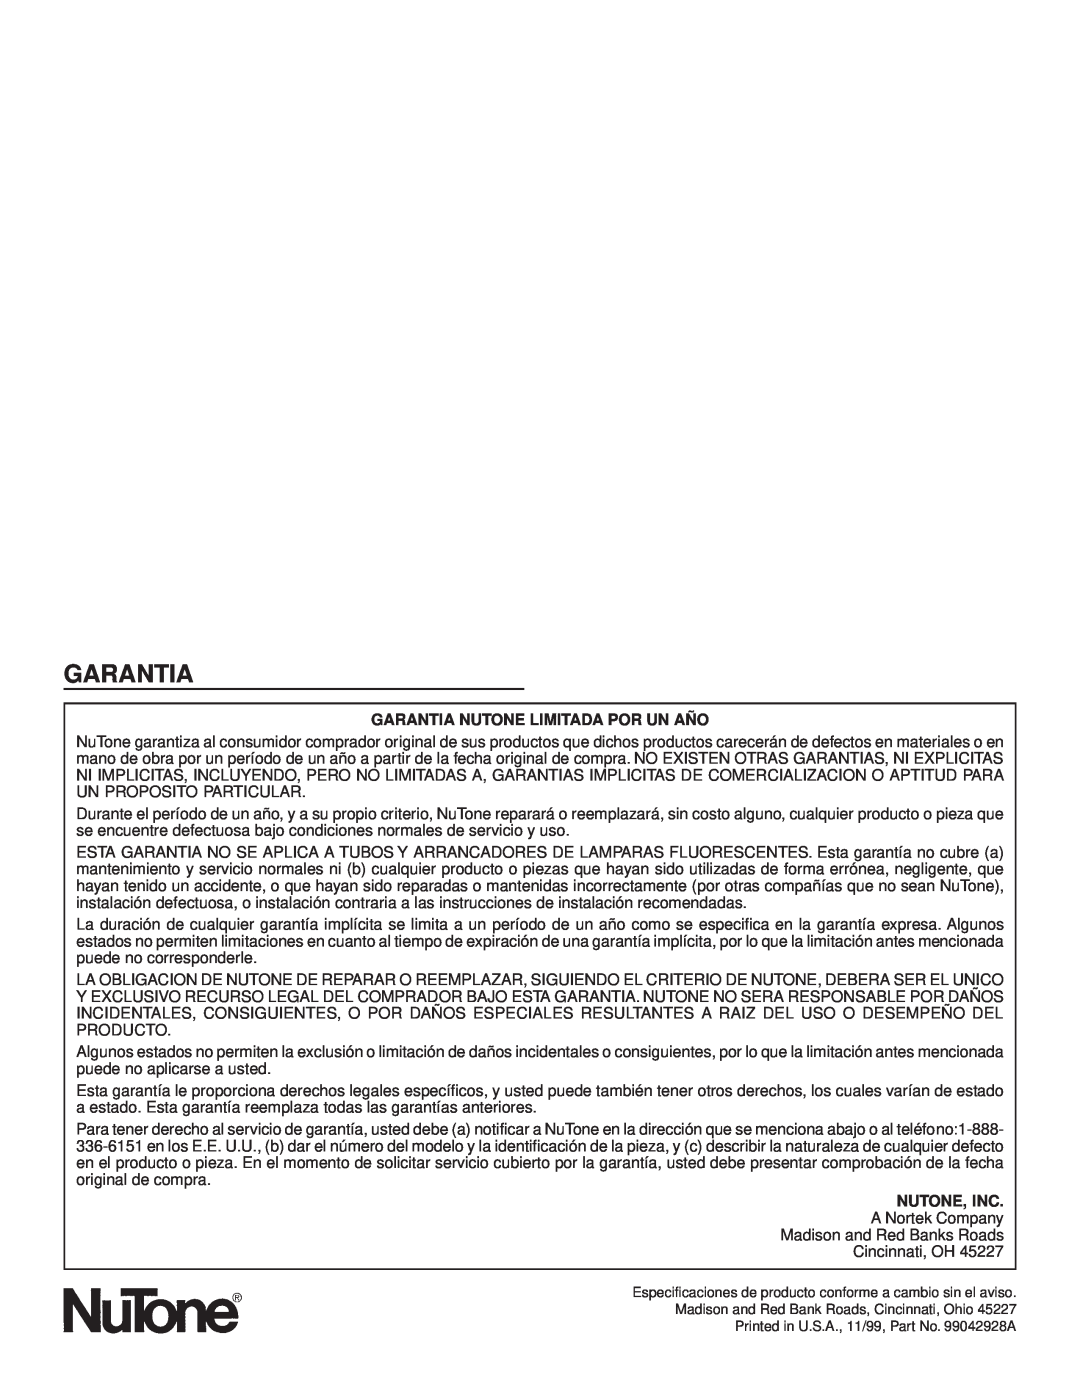 NuTone 682NT important safety instructions Garantia Nutone Limitada Por Un Año 